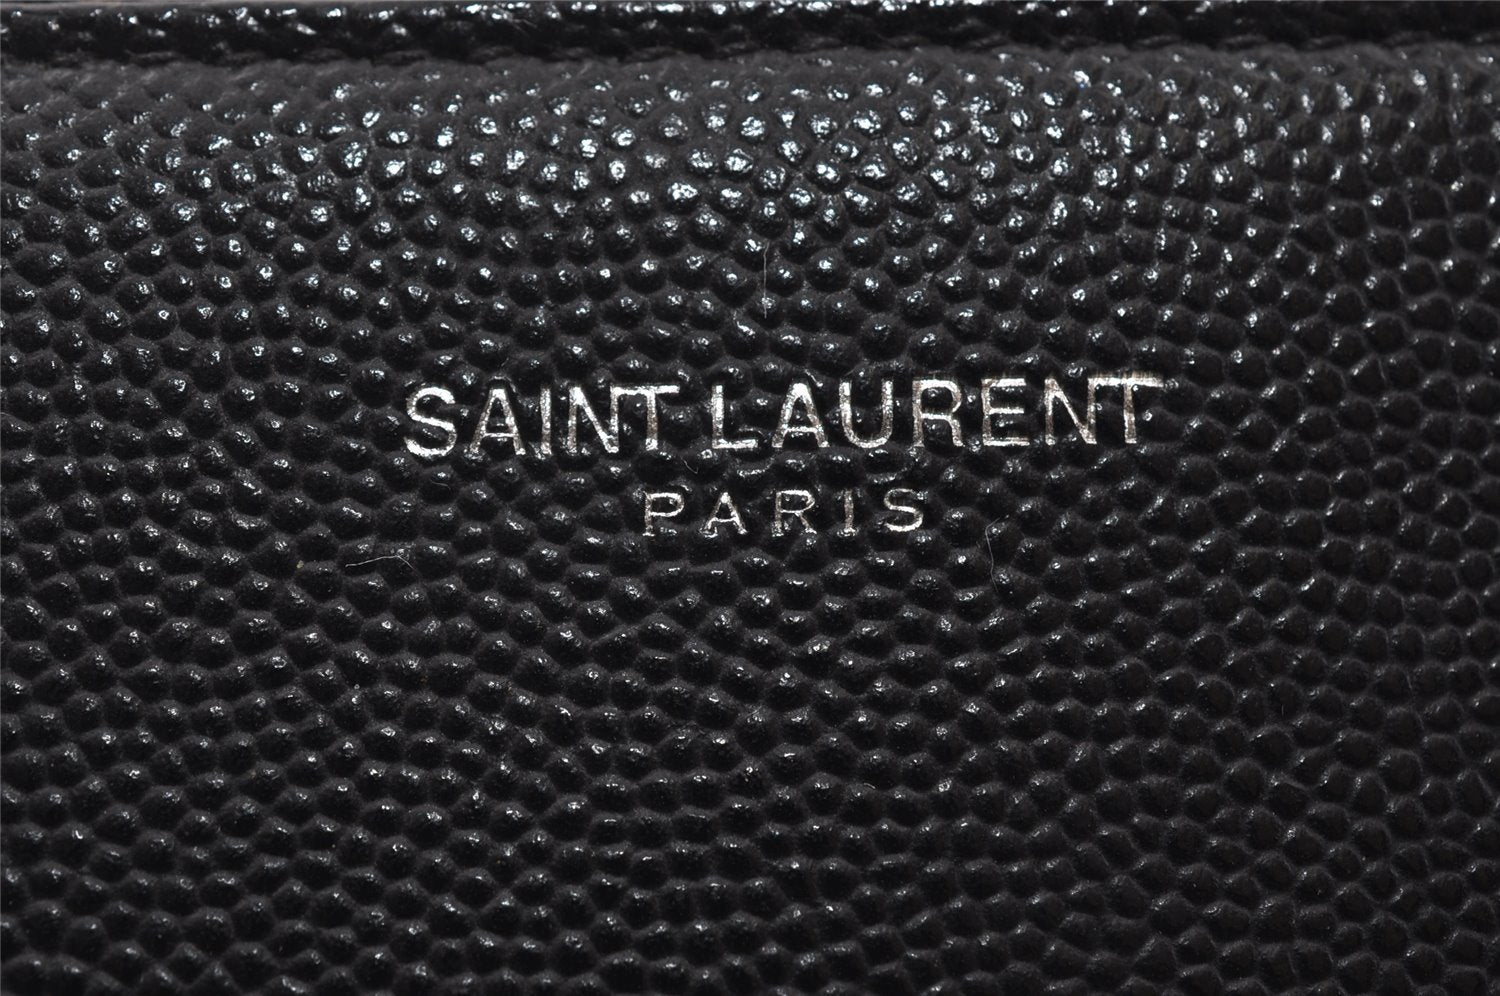 Authentic SAINT LAURENT Clutch Hand Bag Purse Leather TGR397294 Black 4650I